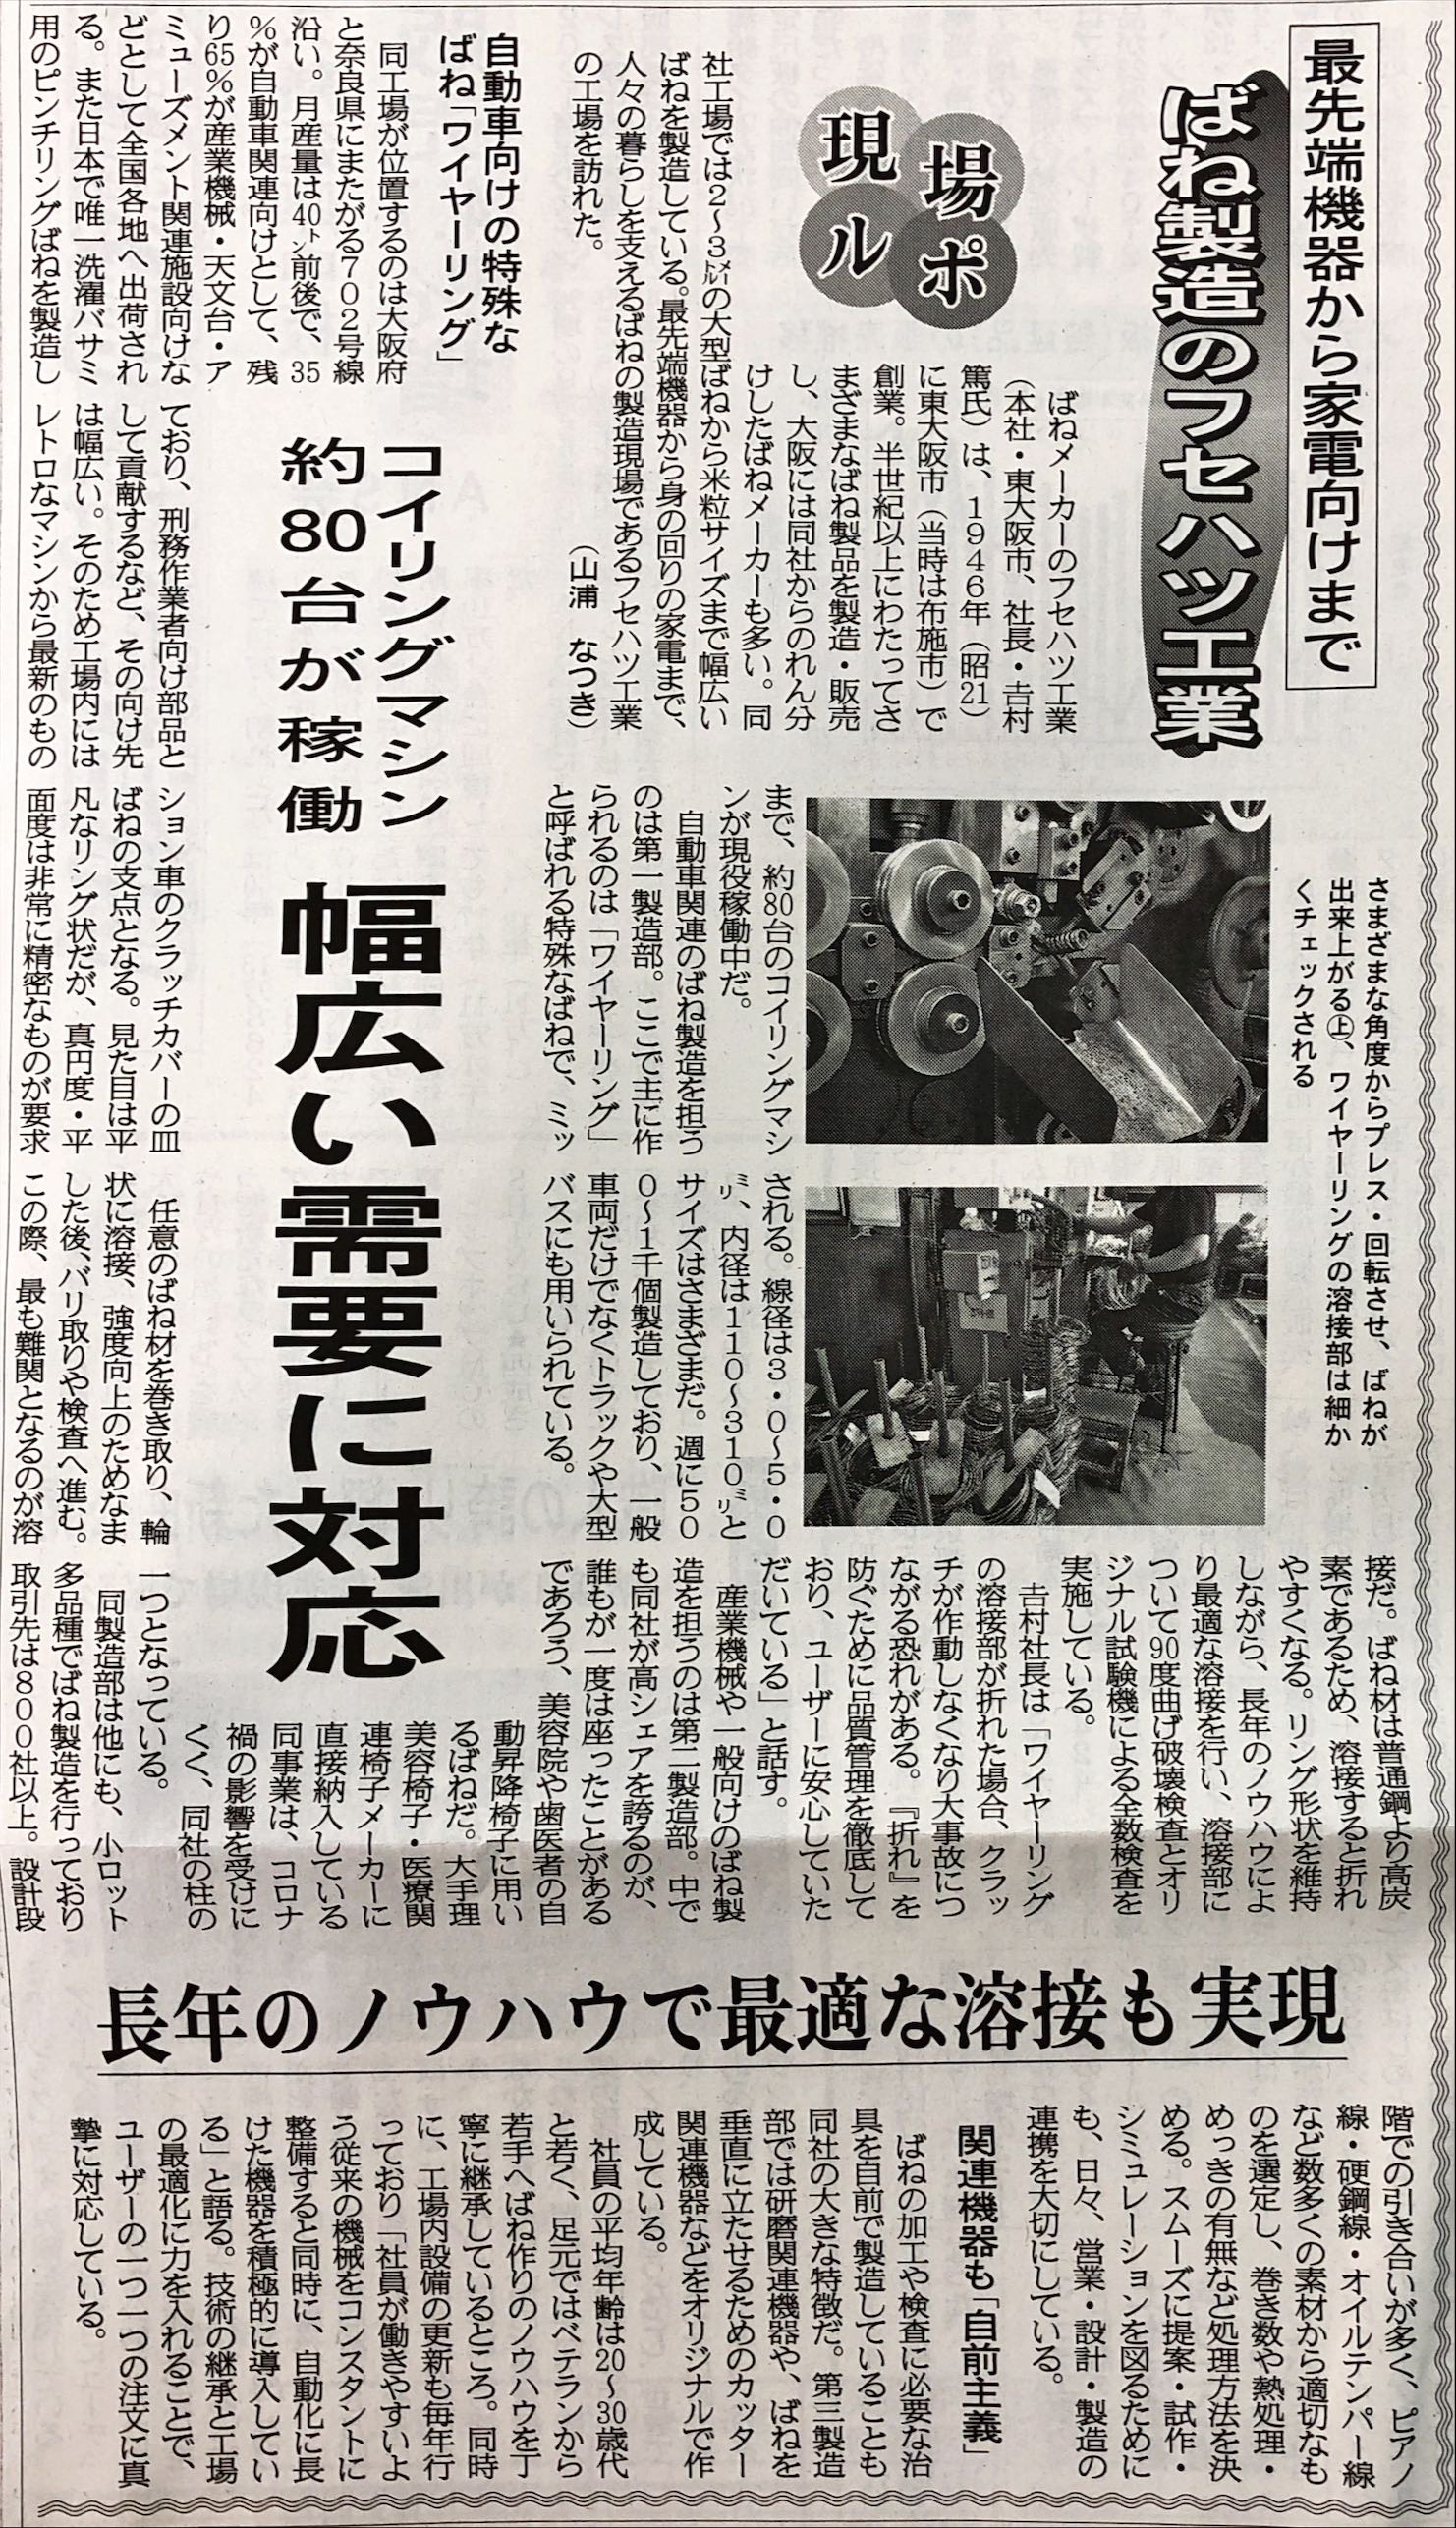 「鉄鋼新聞」に弊社の記事が掲載されました！　日本列島情報ネット 最先端機器から家電向けまで ばね製造のフセハツ工業